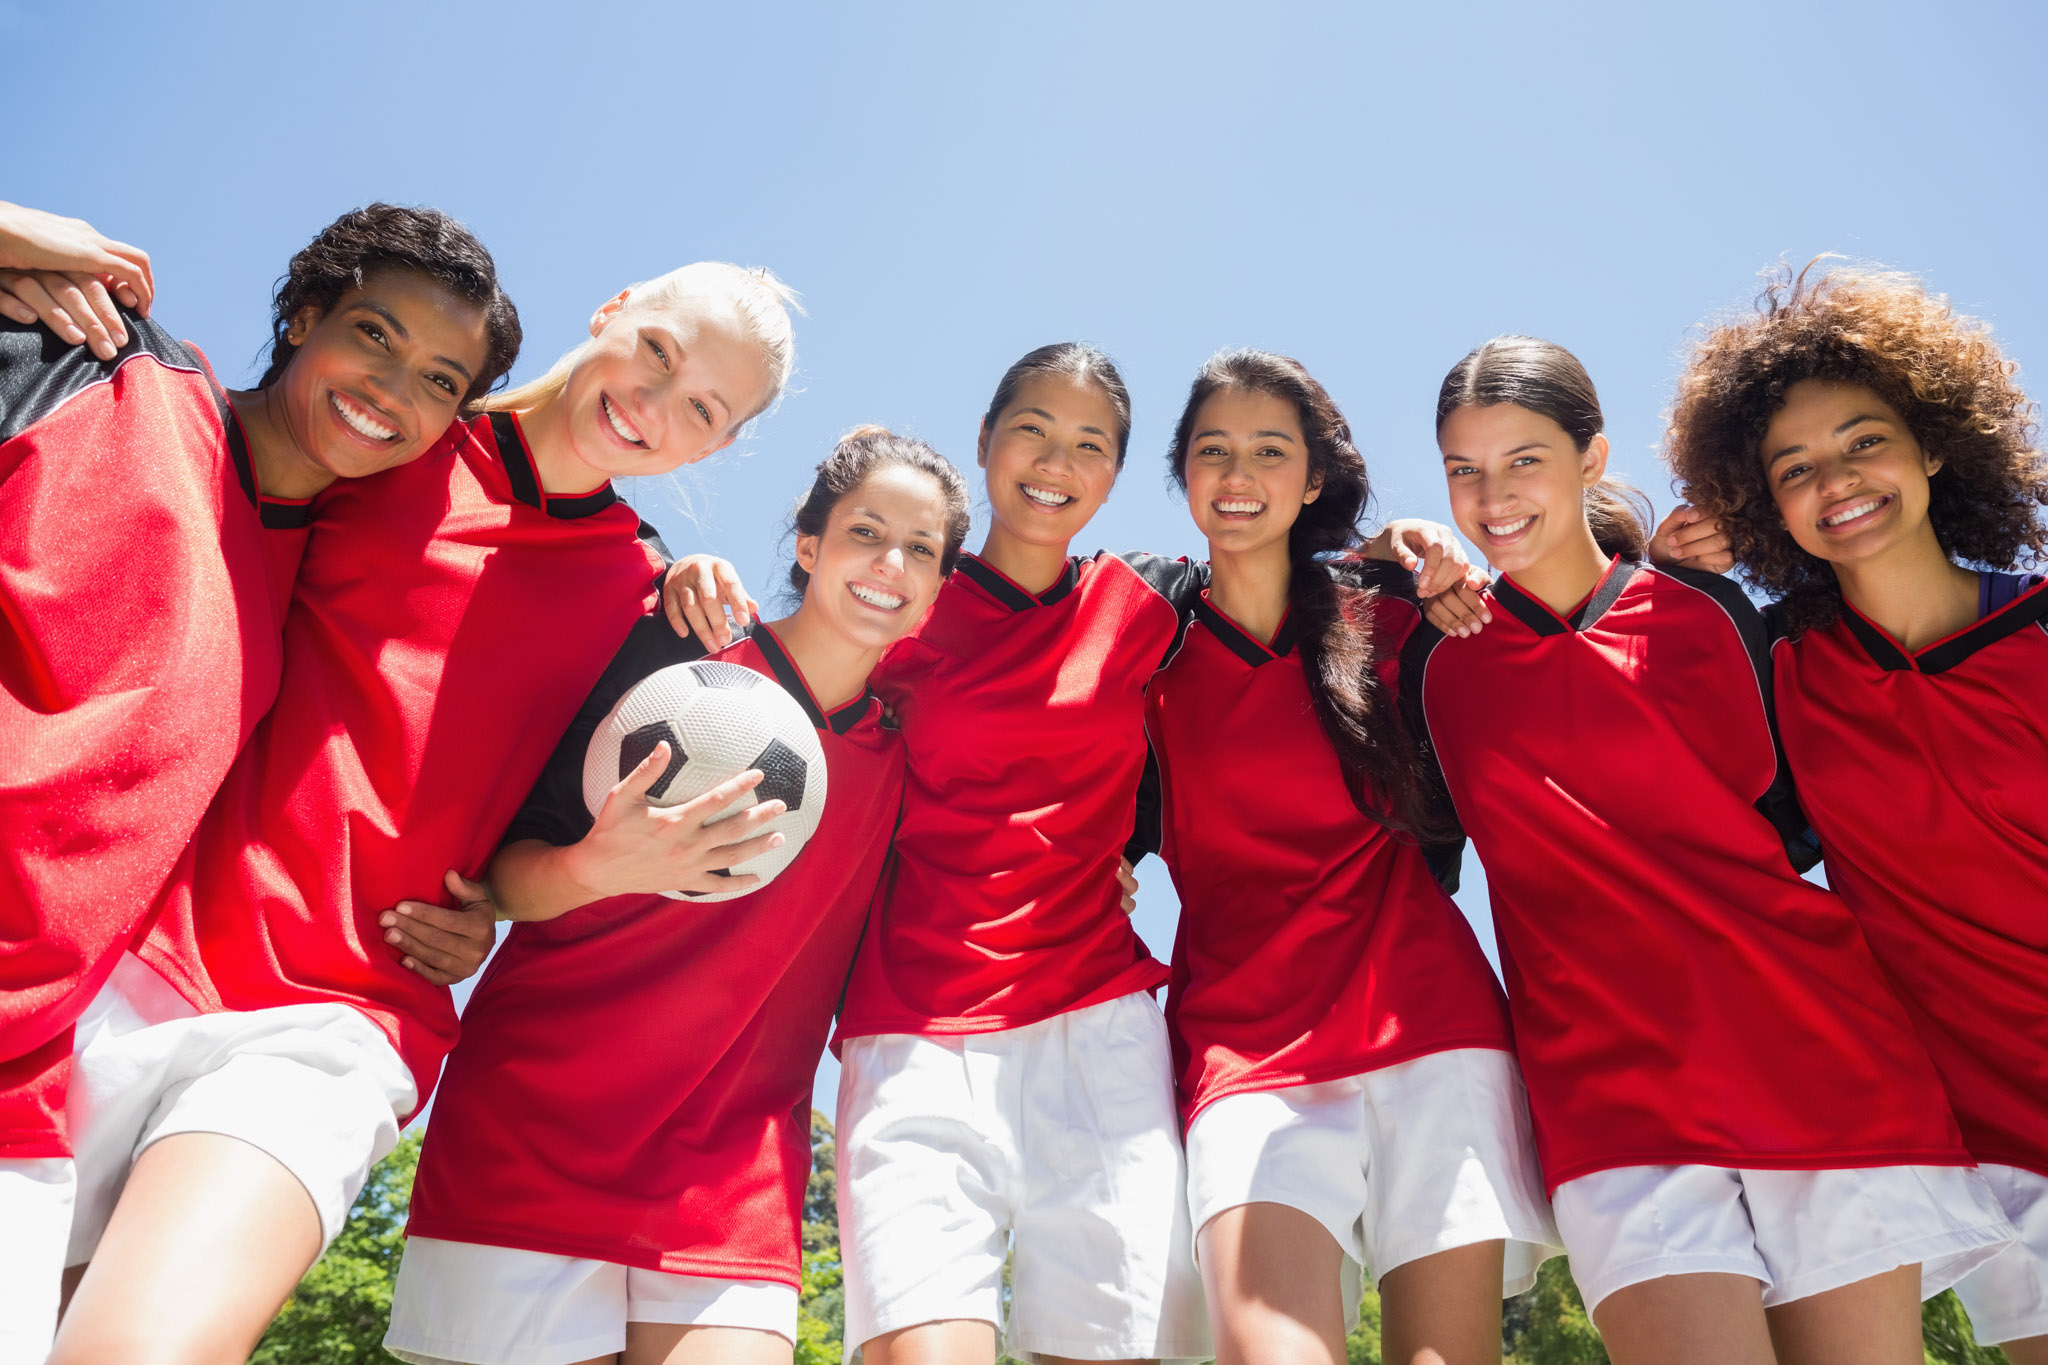 A smiling girls soccer team